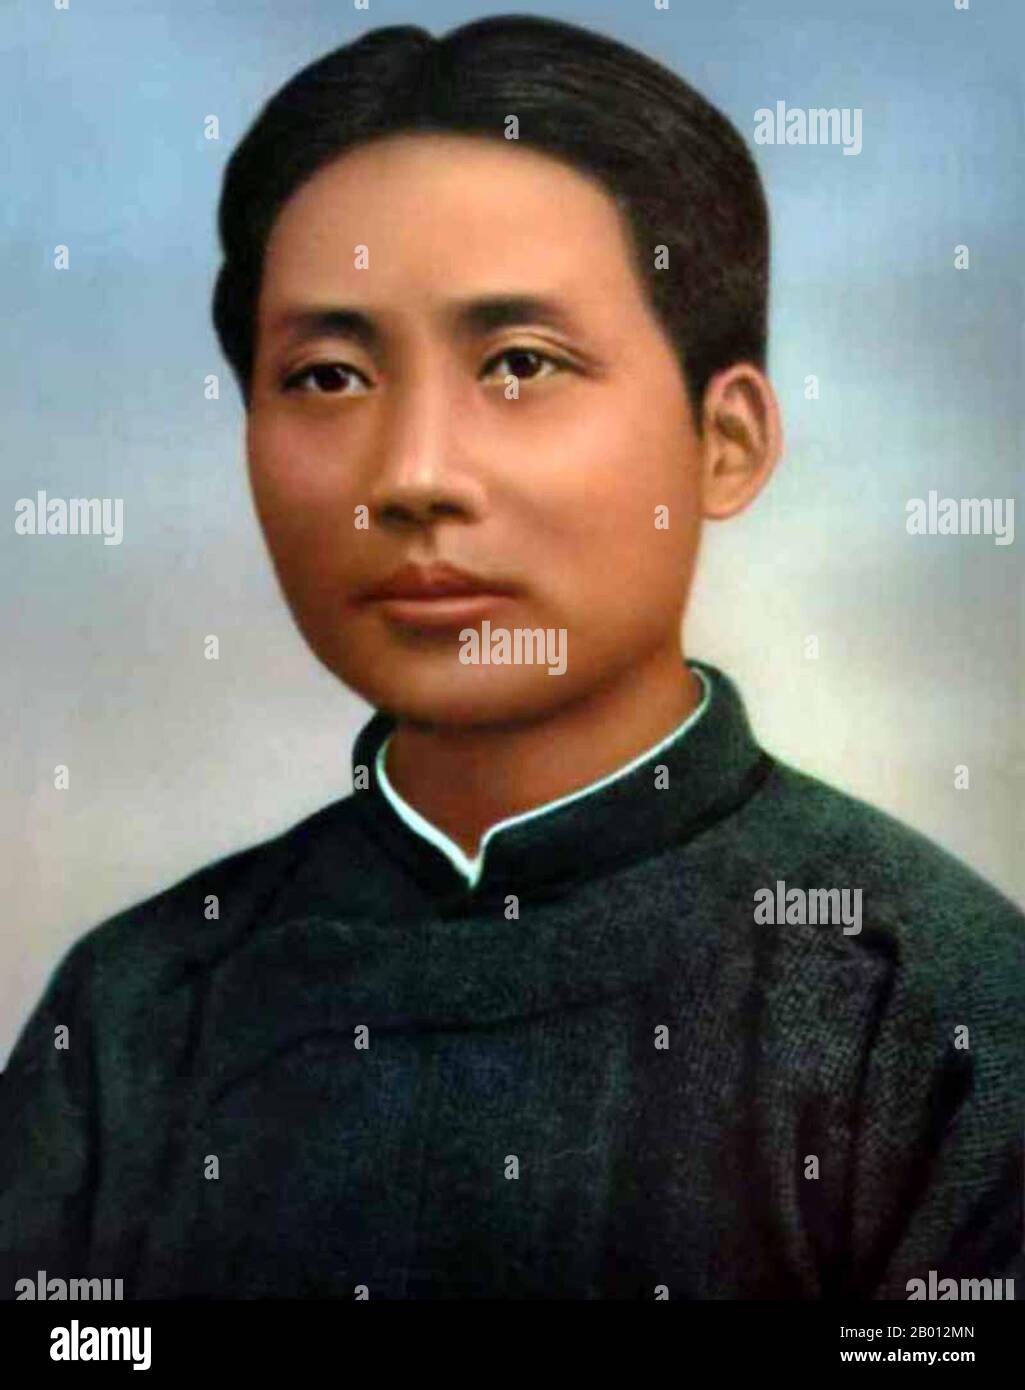 China: Mao Zedong (1893-1976), 1921. Mao Zedong, ebenfalls Mao Tse-tung (26. Dezember 1893 – 9. September 1976), war ein chinesischer kommunistischer Revolutionär, Guerillakämpfer, Stratege, Autor, politischer Theoretiker und Führer der chinesischen Revolution. Allgemein als Vorsitzender Mao bezeichnet, war er seit seiner Gründung im Jahr 1949 der Architekt der Volksrepublik China (PRC) und hatte bis zu seinem Tod im Jahr 1976 die autoritäre Kontrolle über die Nation. Sein theoretischer Beitrag zum Marxismus-Leninismus sowie seine militärischen Strategien und politischen Strategien werden als Maoismus bezeichnet. Stockfoto